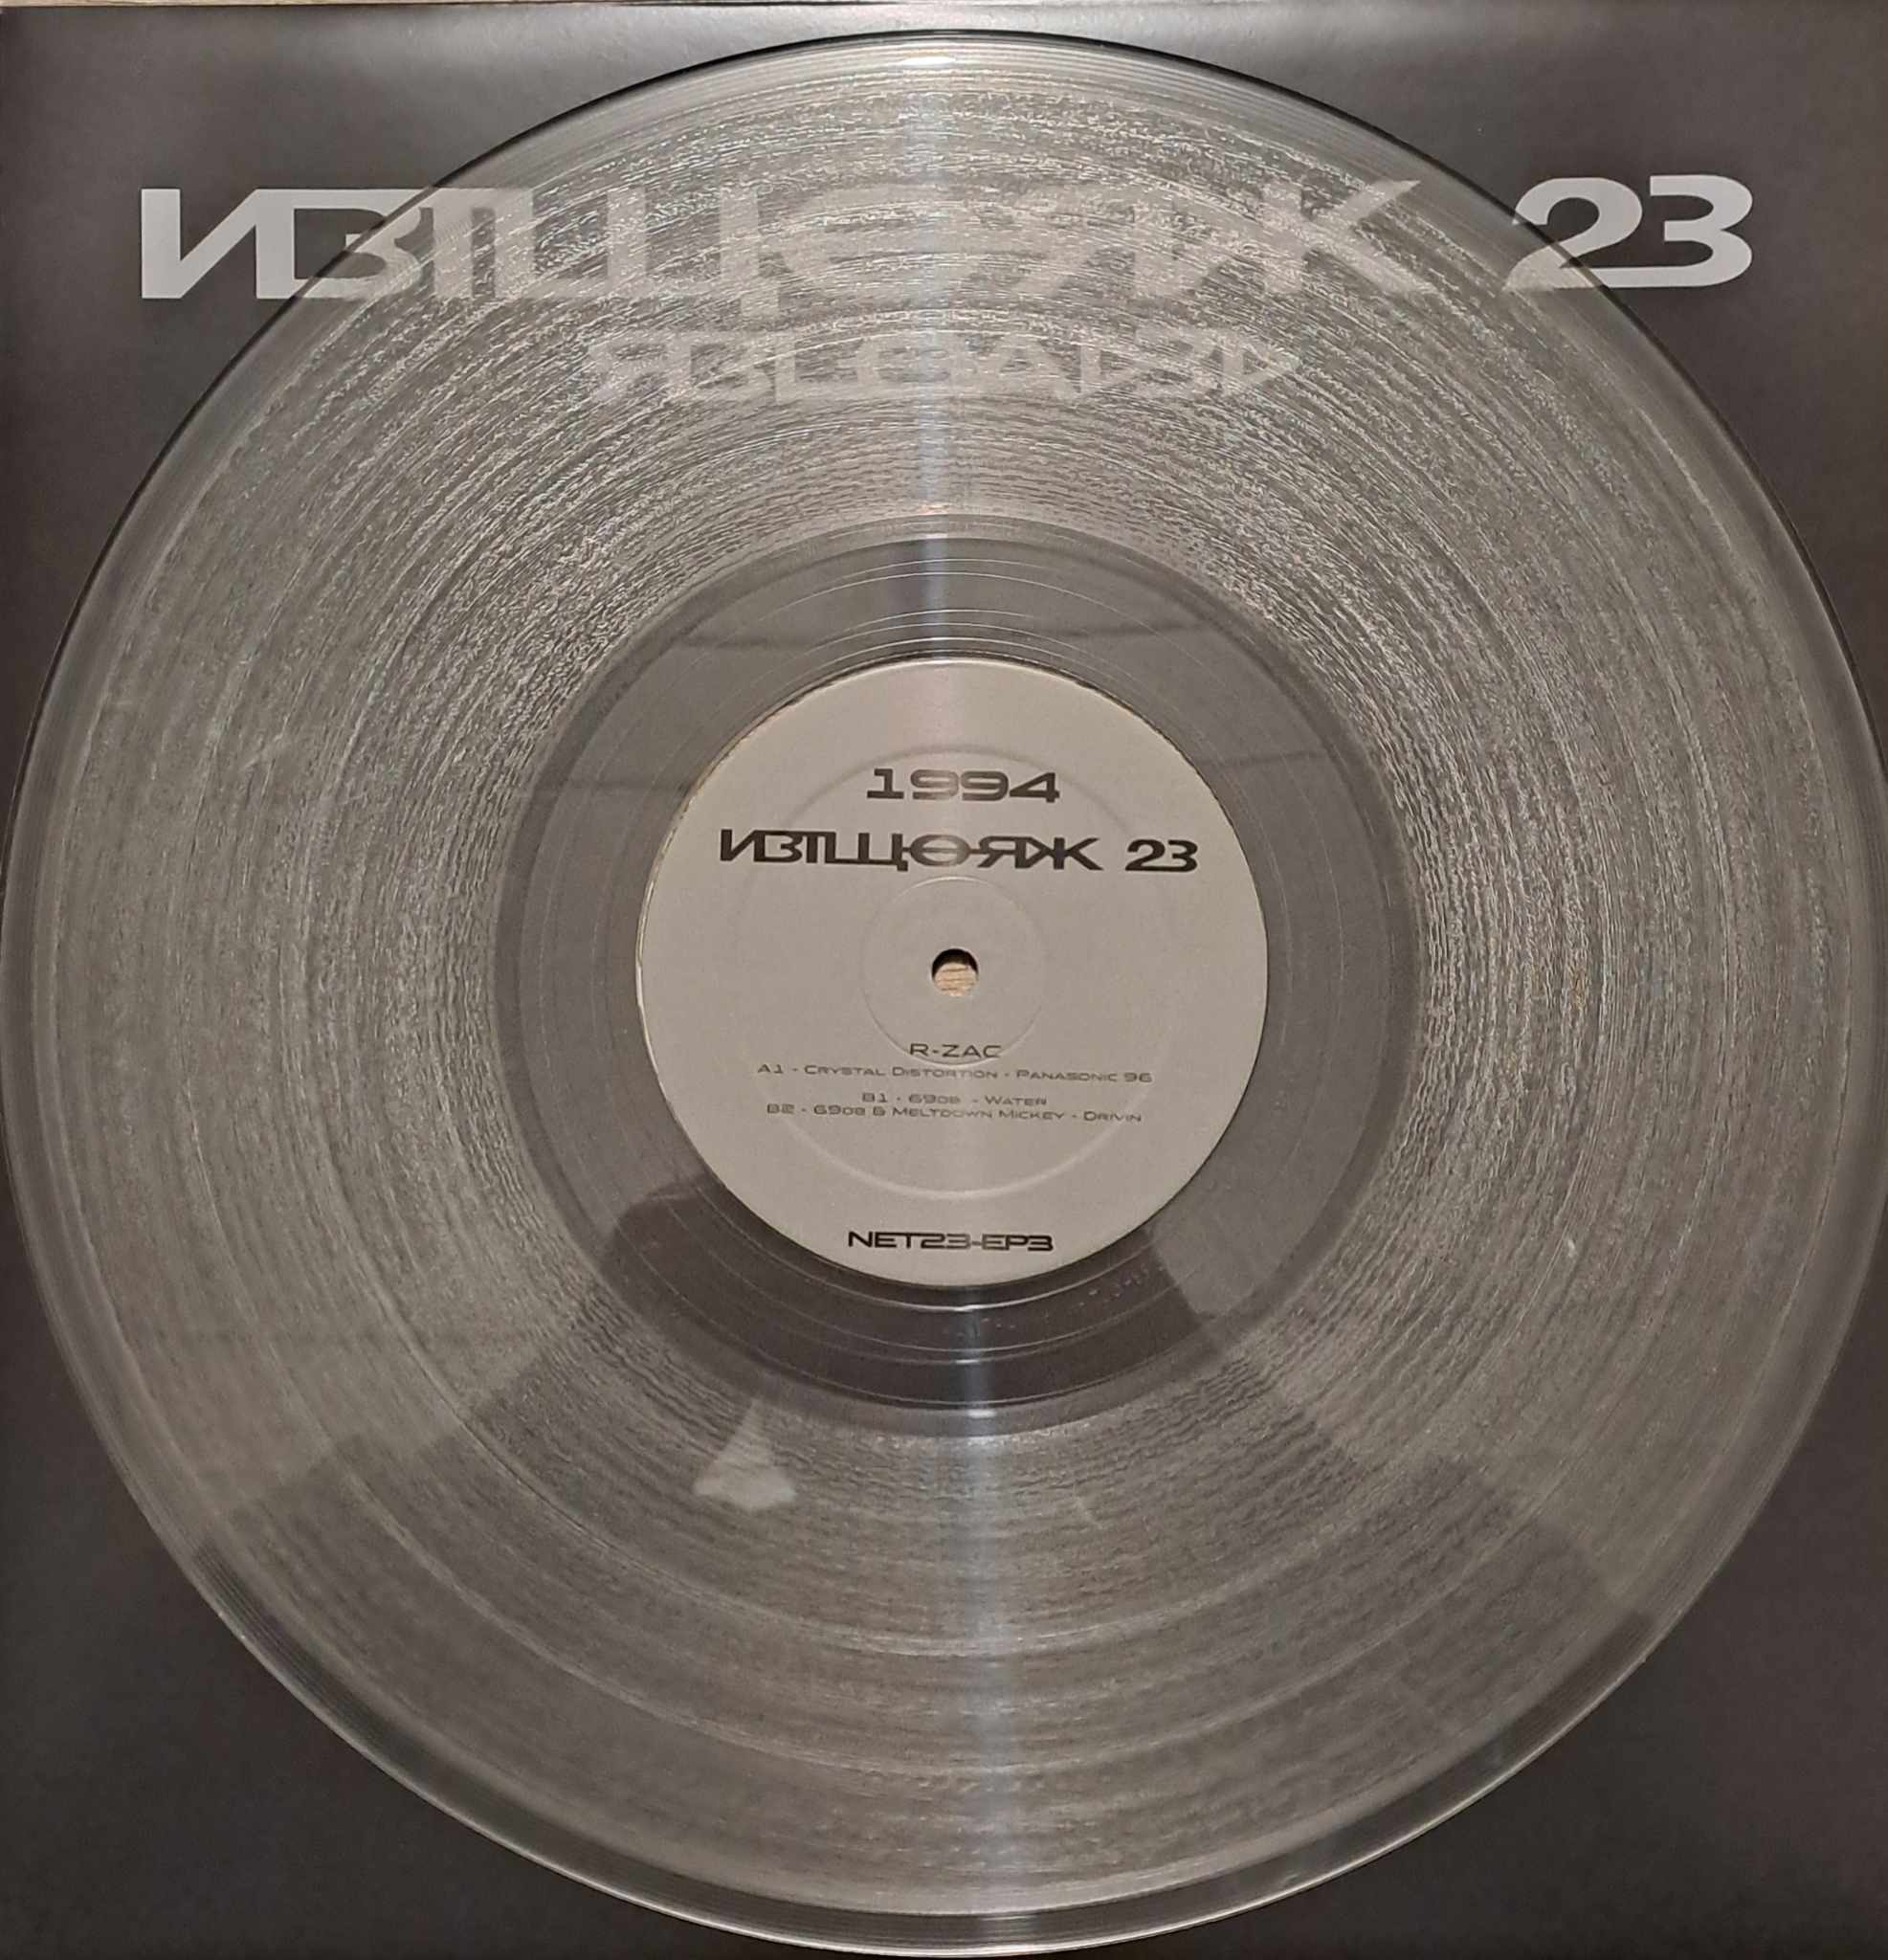 Network23 EP 03 - vinyle freetekno